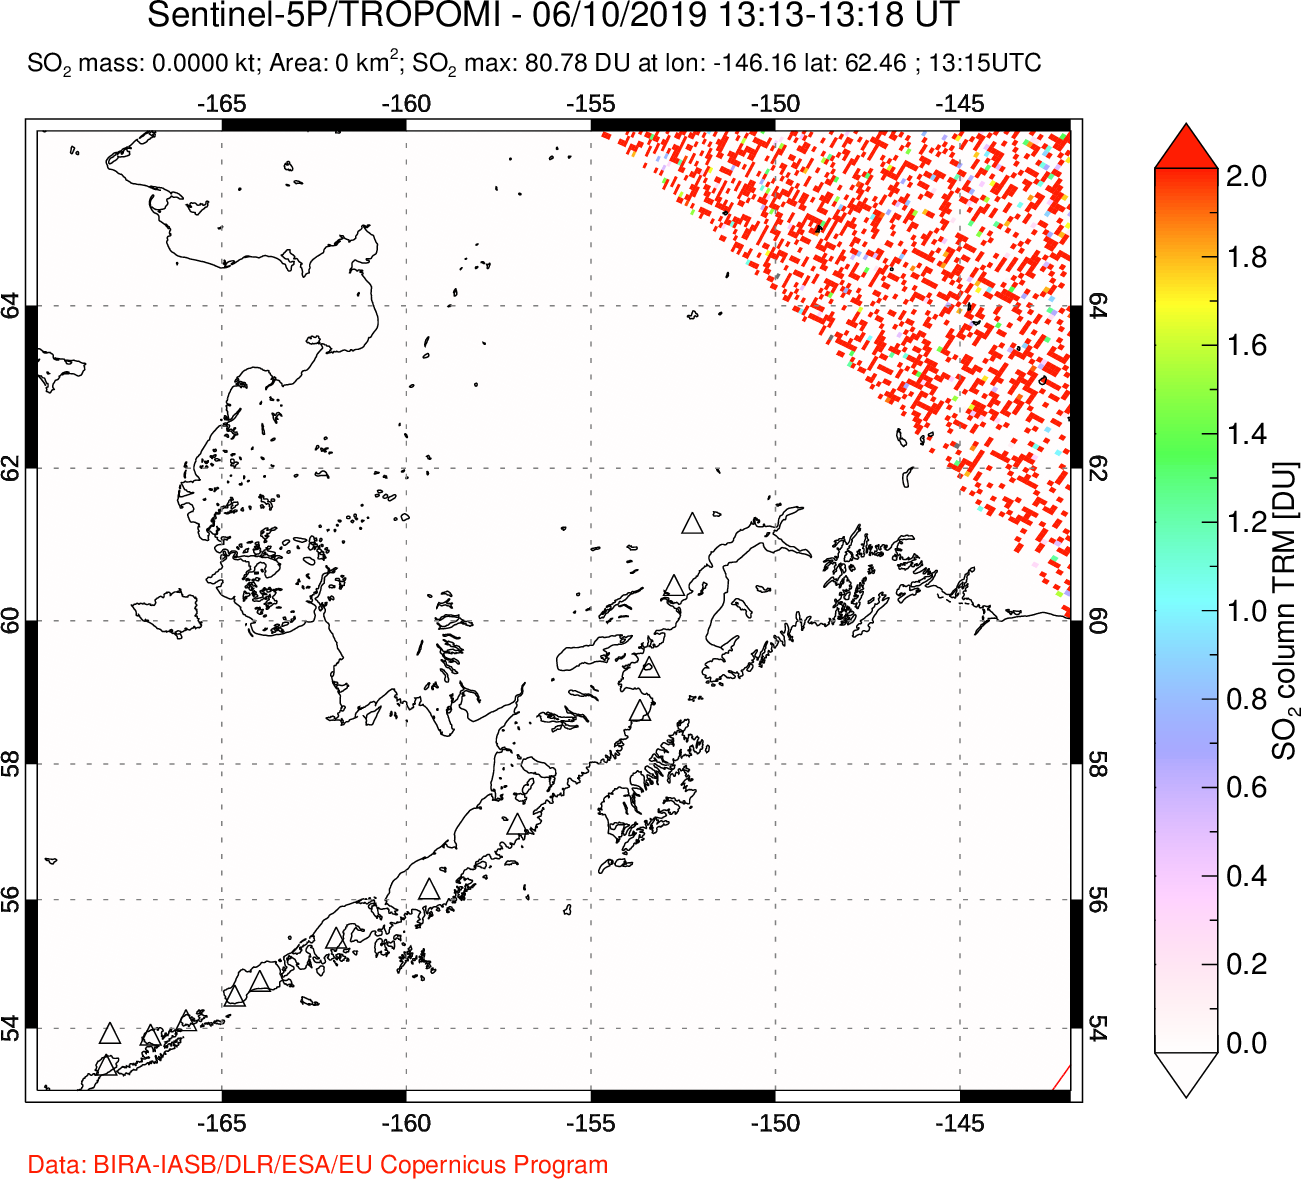 A sulfur dioxide image over Alaska, USA on Jun 10, 2019.